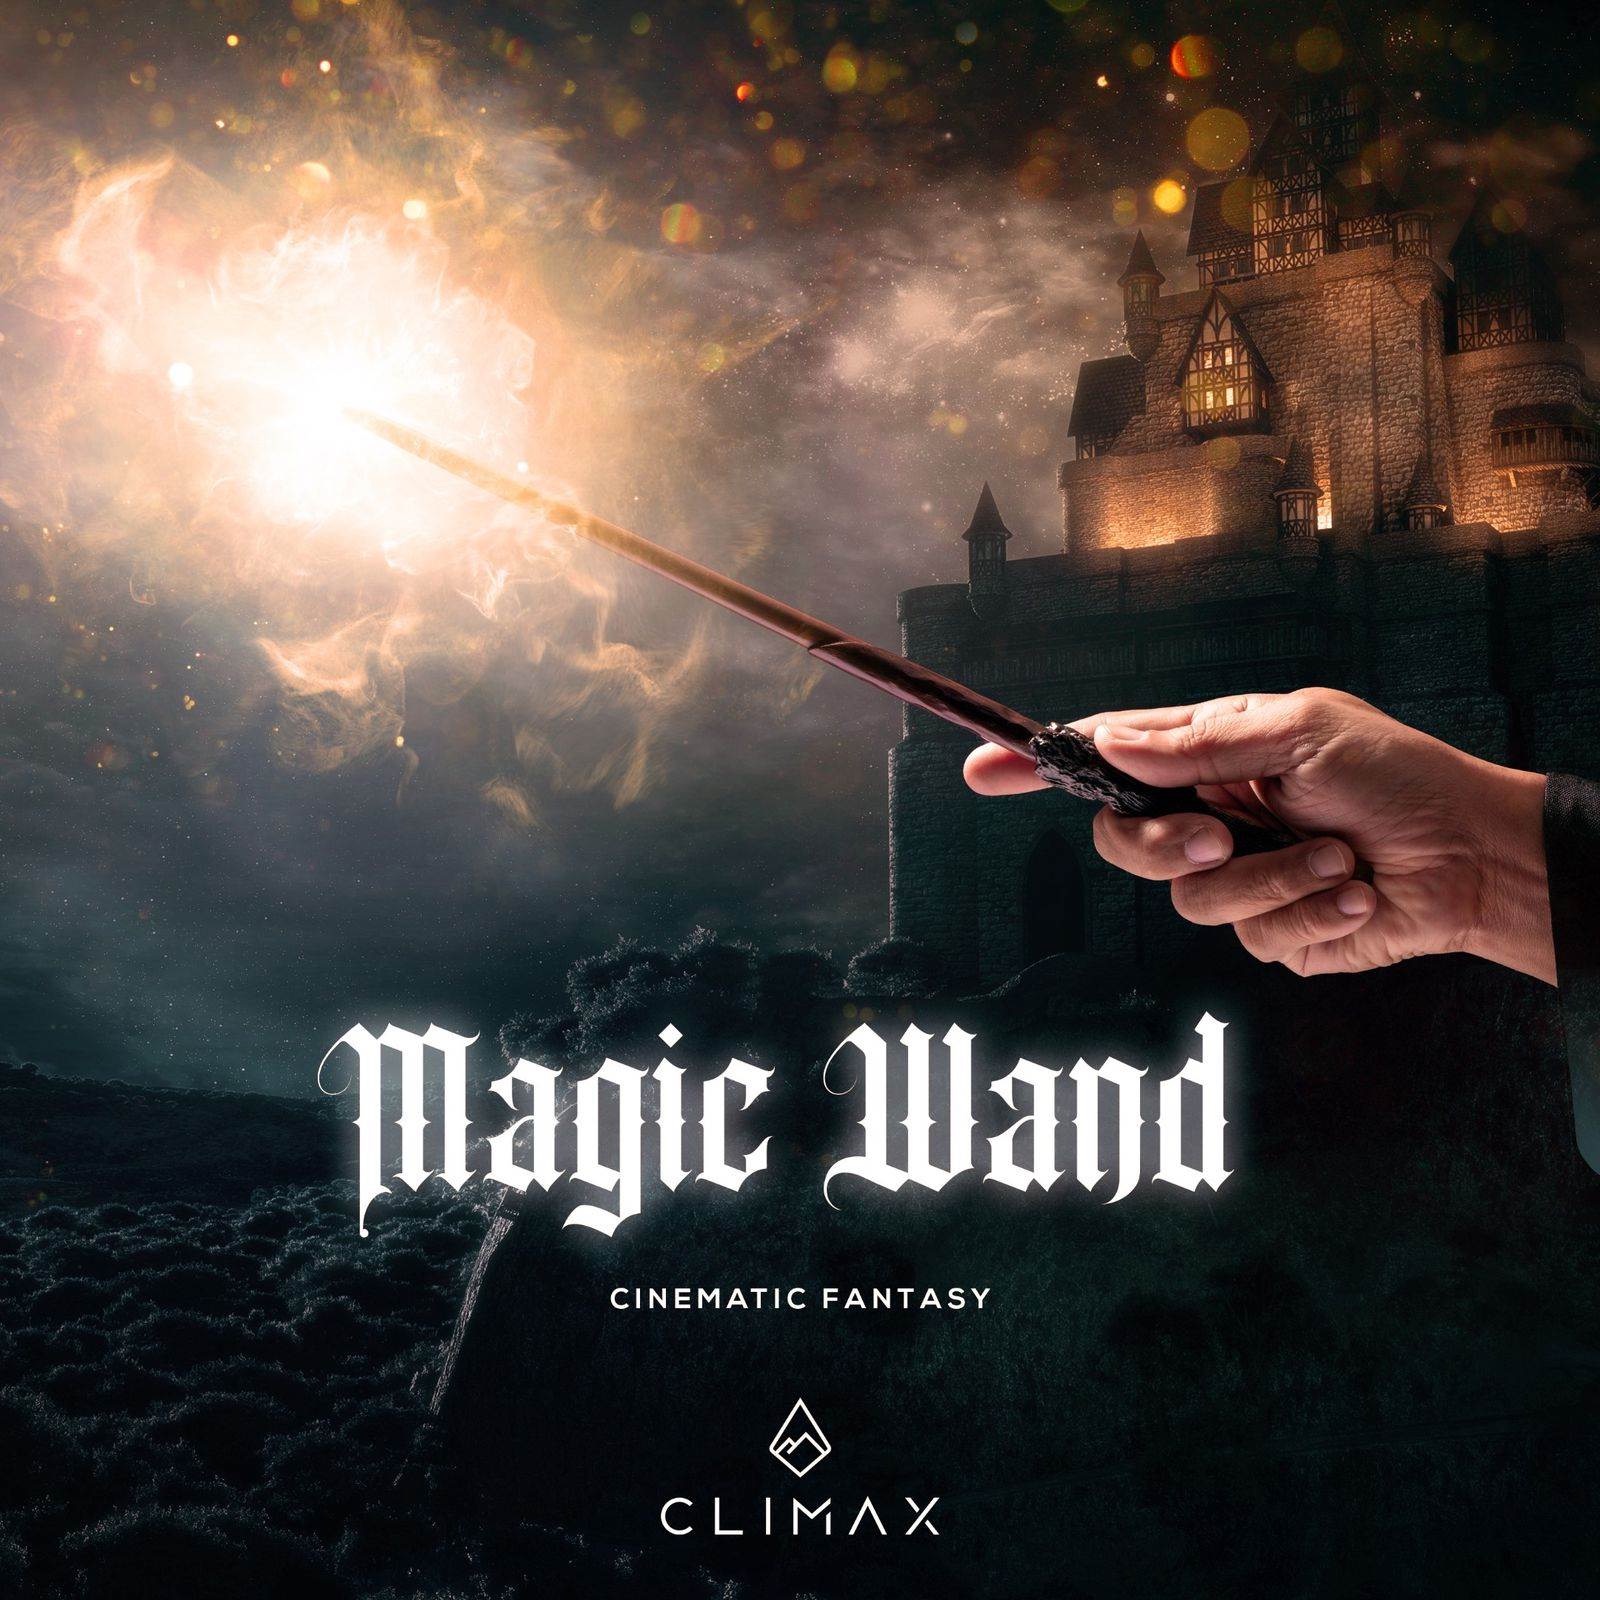 Песня волшебная палочка. New Magic Wand песня.